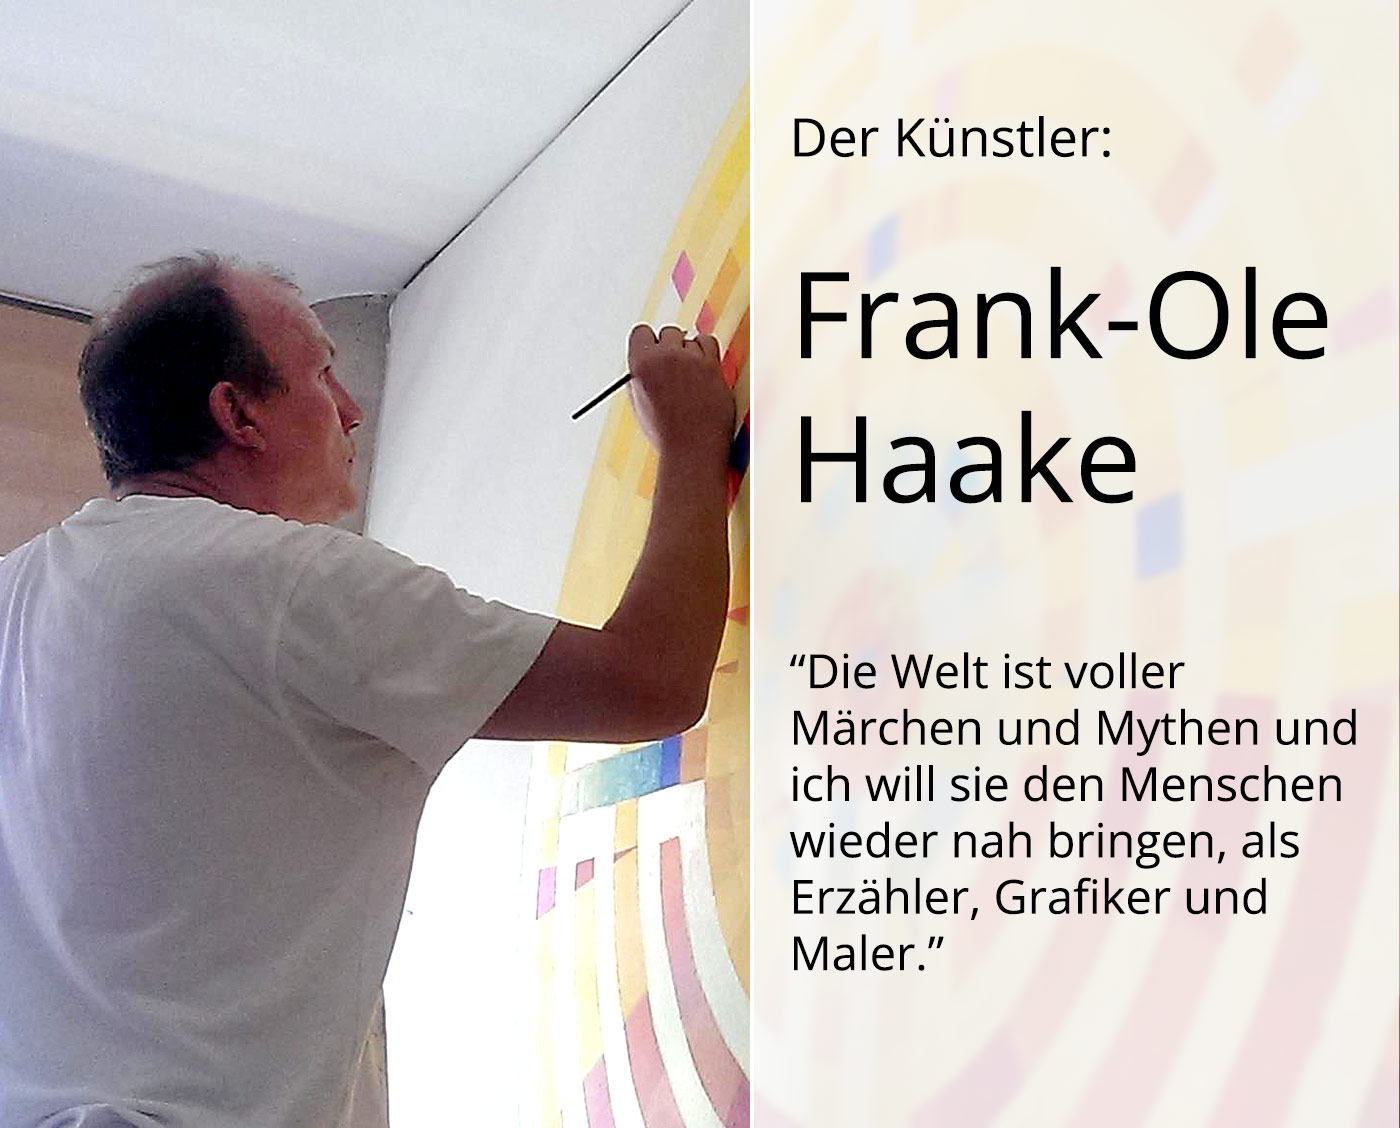 Grafik, mehrfarbiger Linoldruck von Frank-Ole Haake: "Kampf der Dämonen 09 (20)"